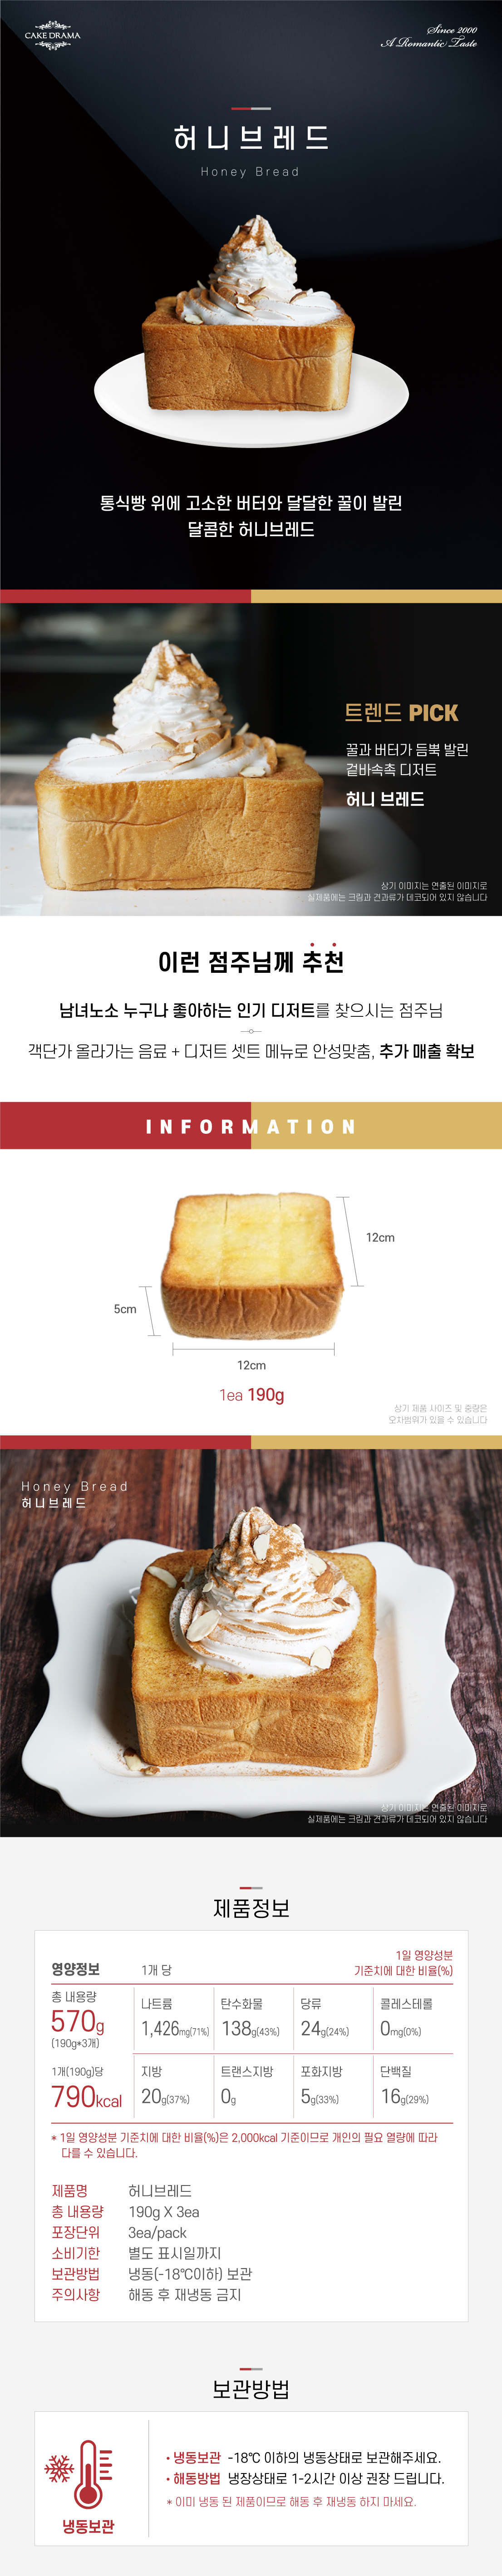 Honey_bread.jpg"